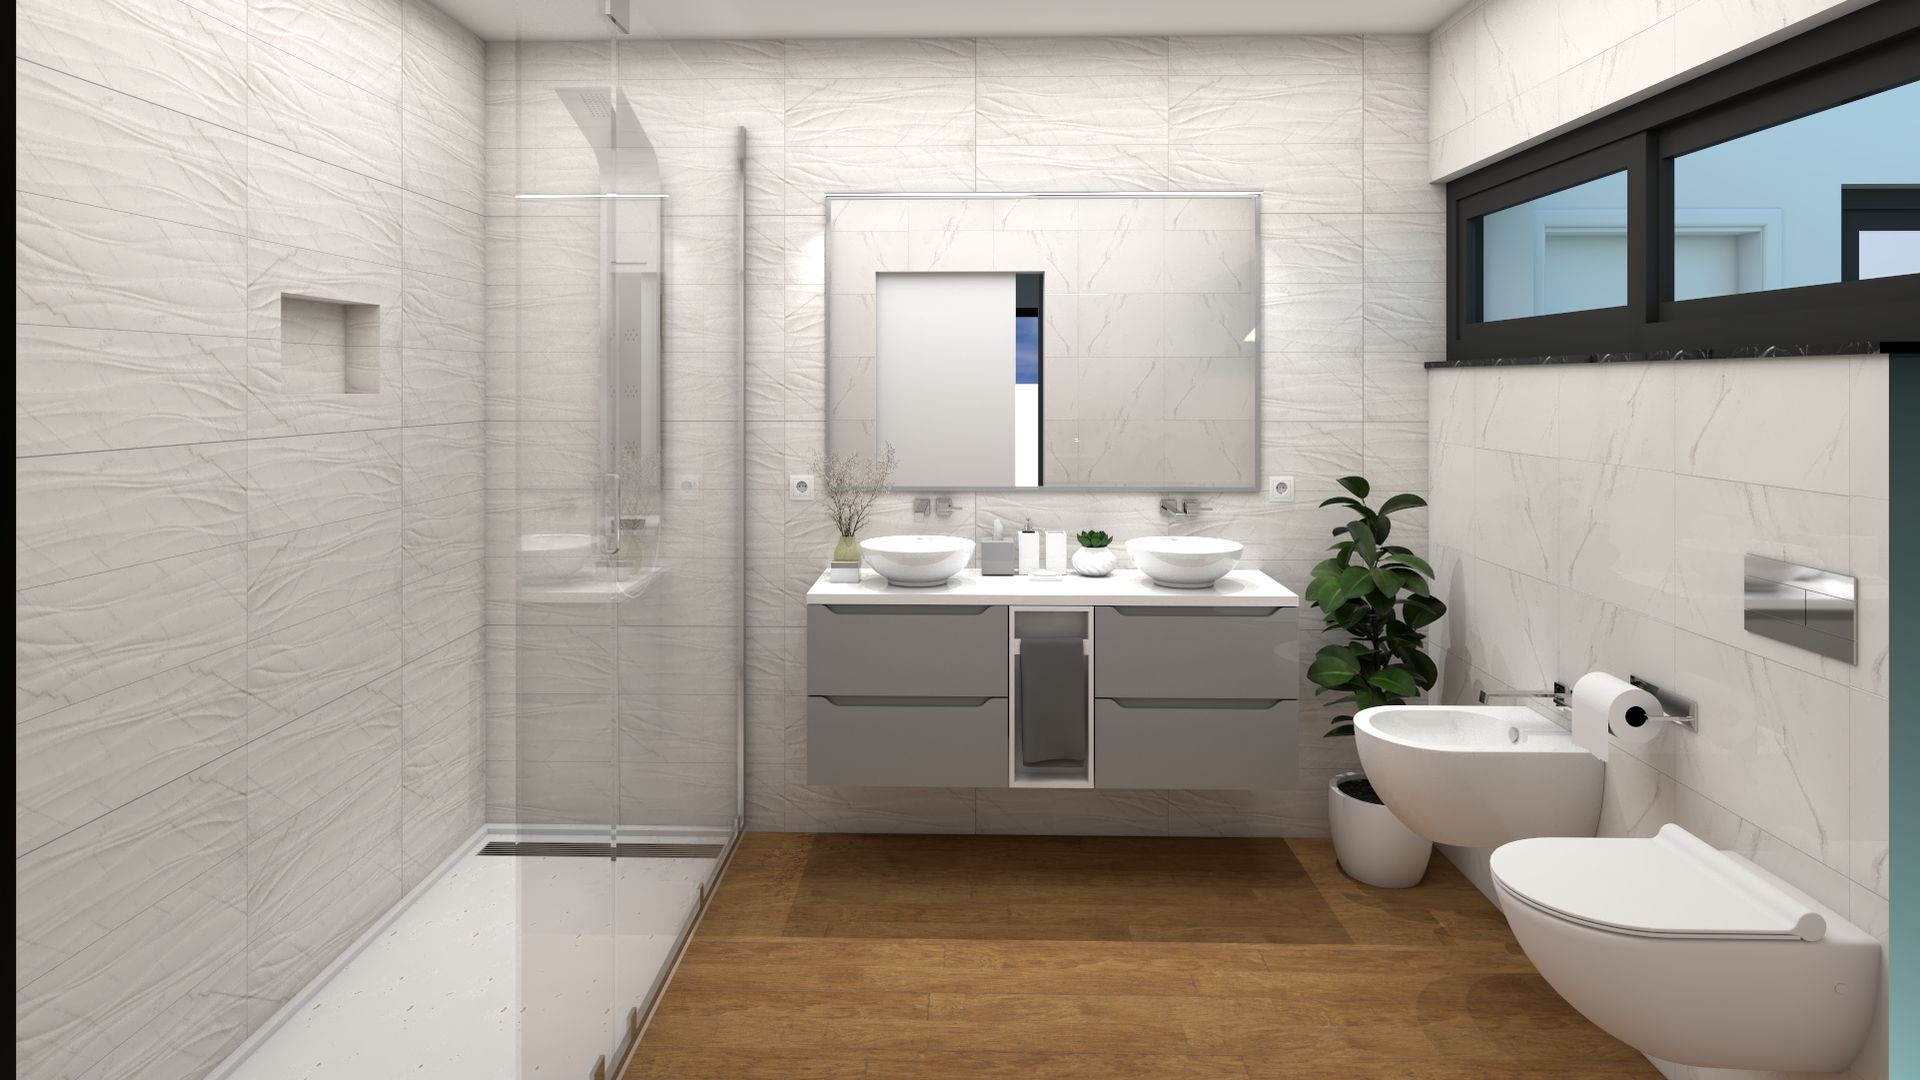 Casa de Banho Suite Master Ginkgo Design Studio Casas de banho modernas Cerâmica Casa de banho suite, móvel duplo, base de duche dupla, móvel suspenso, cinza, branco, mármore, ondas